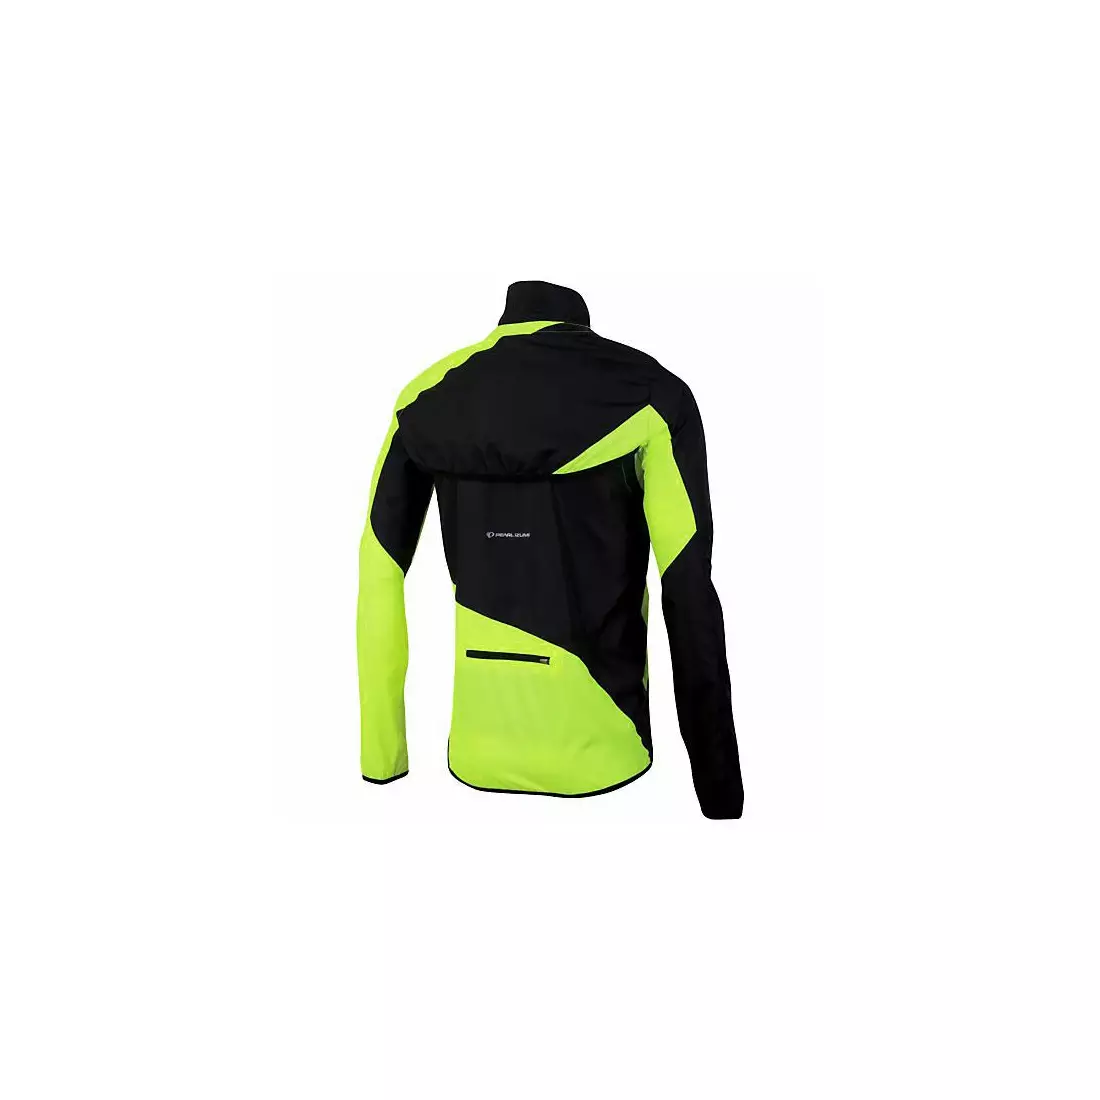 PEARL IZUMI RUN pánská běžecká bunda FLY CONV 12131403-429, barva: černo-fluorová